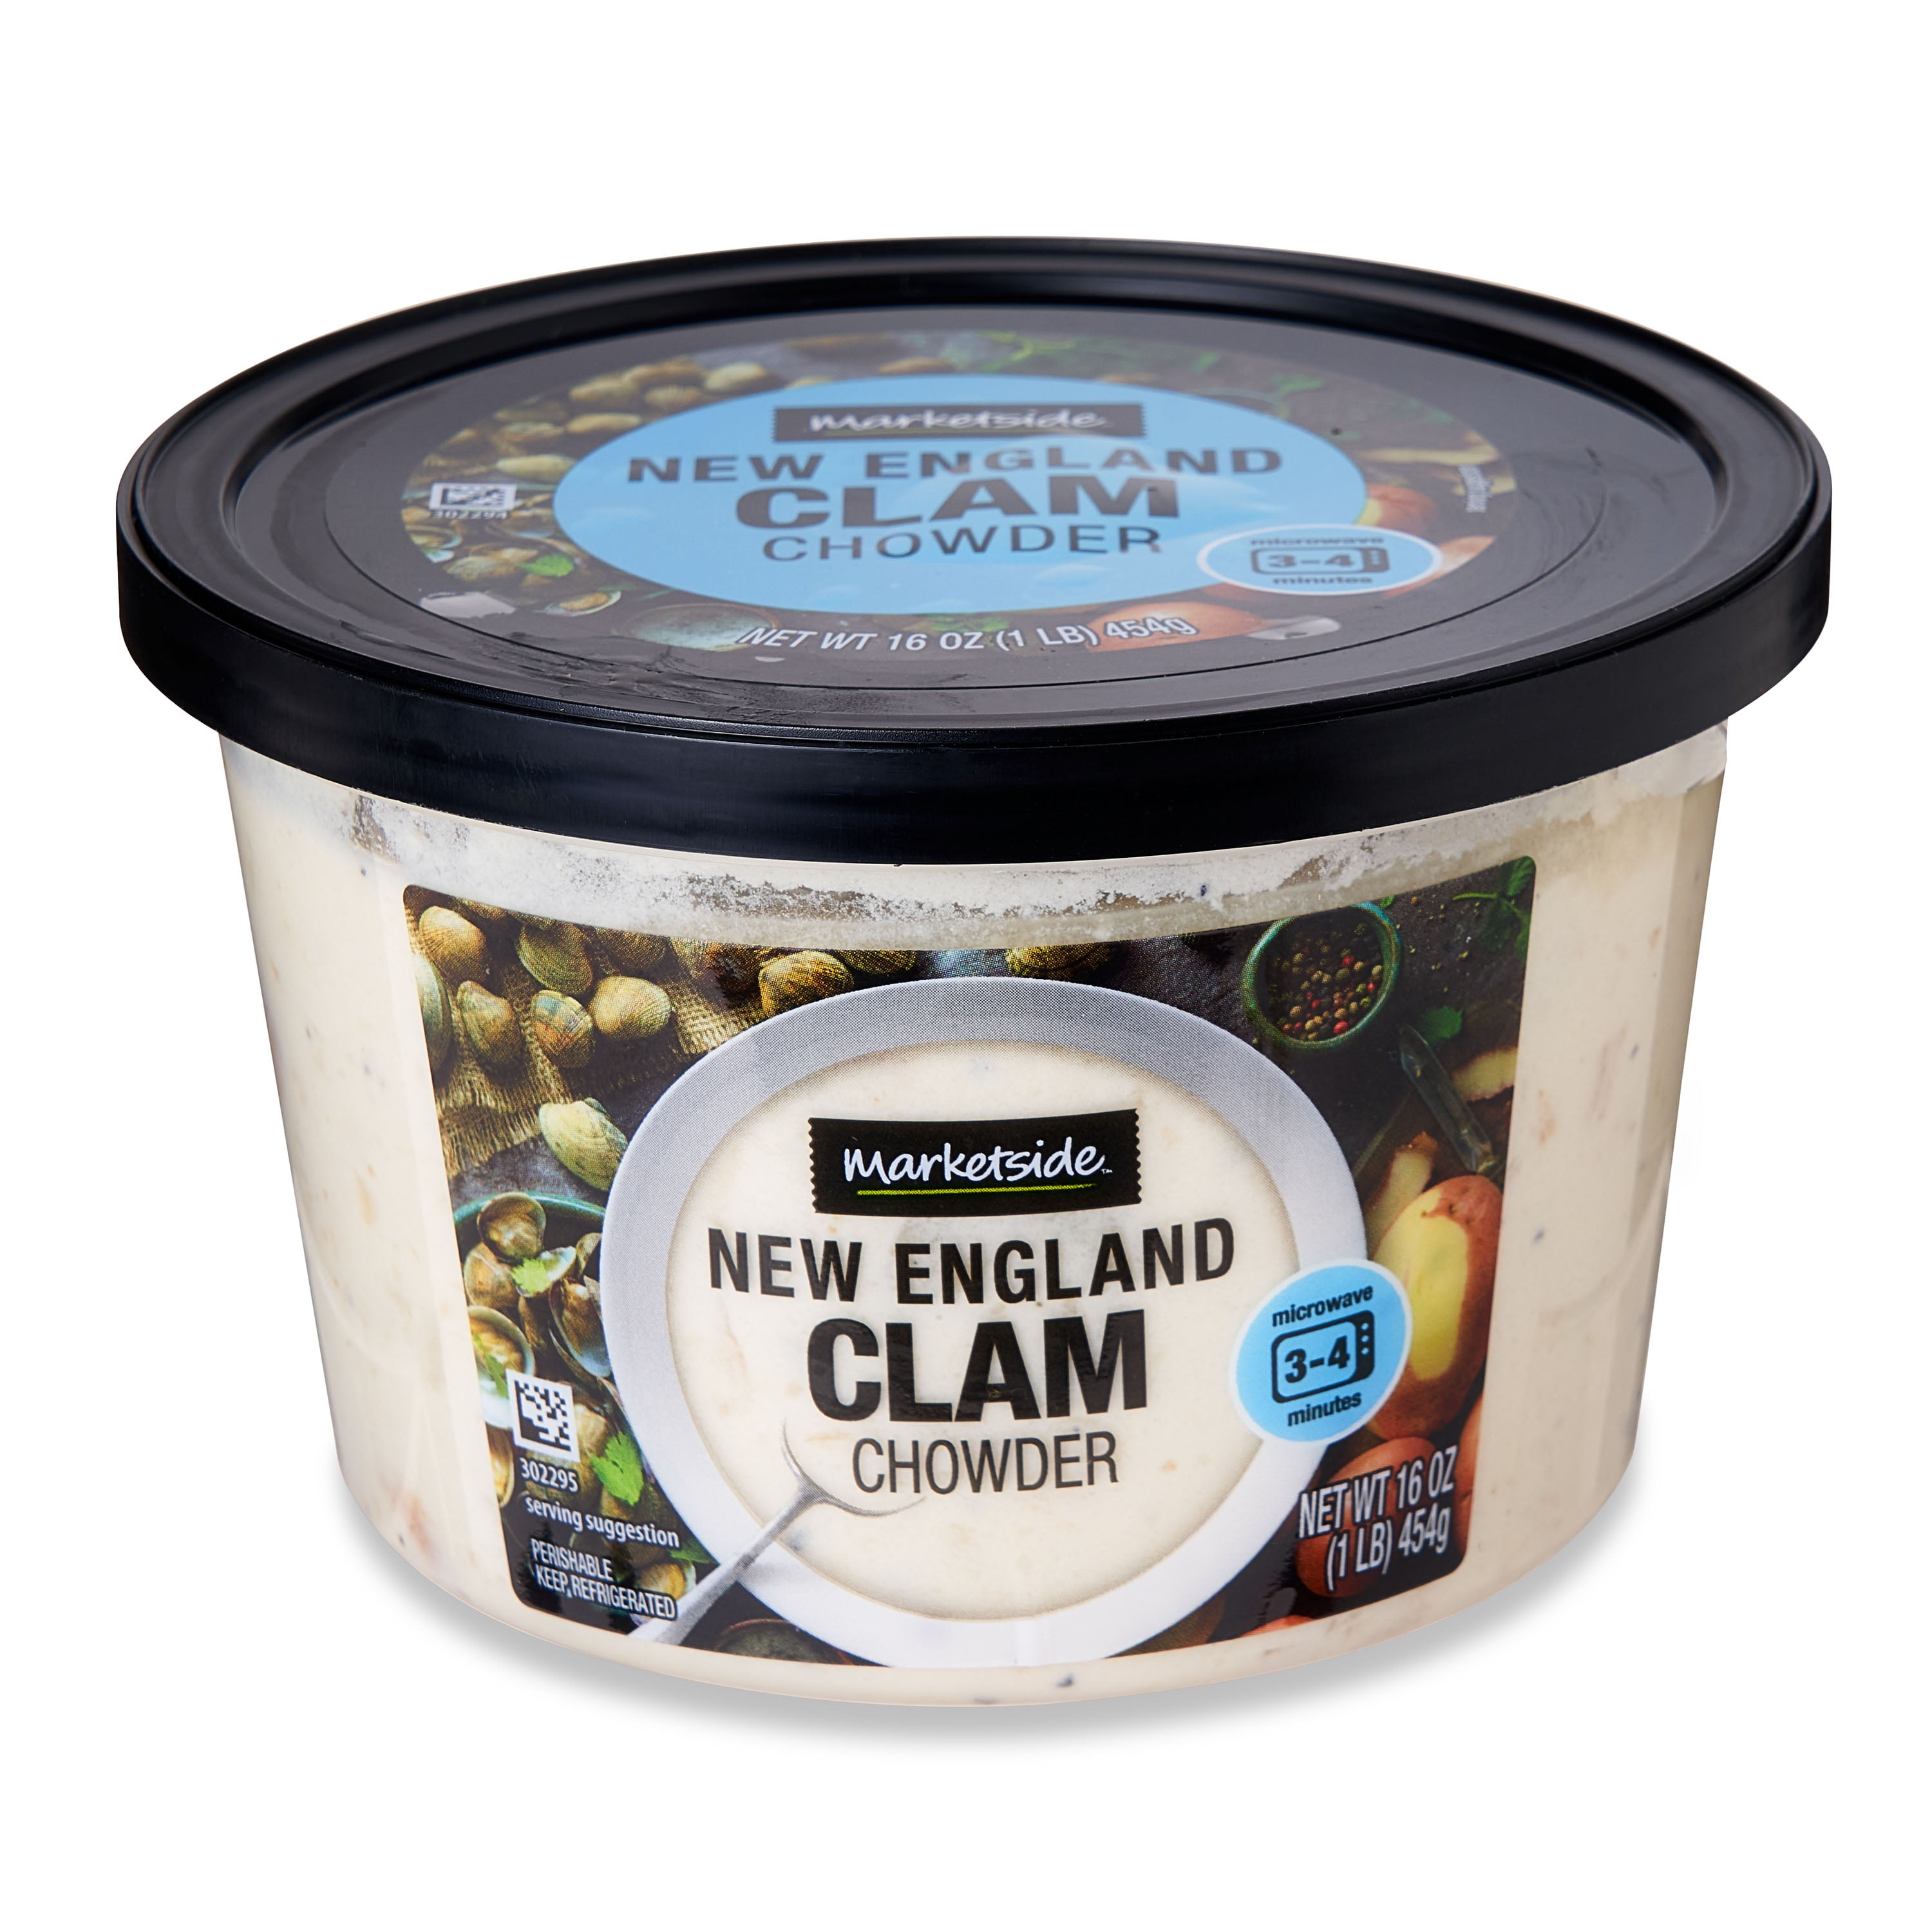 Marketside New England Clam Chowder - Fresh Deli Soup, 16 oz Cup